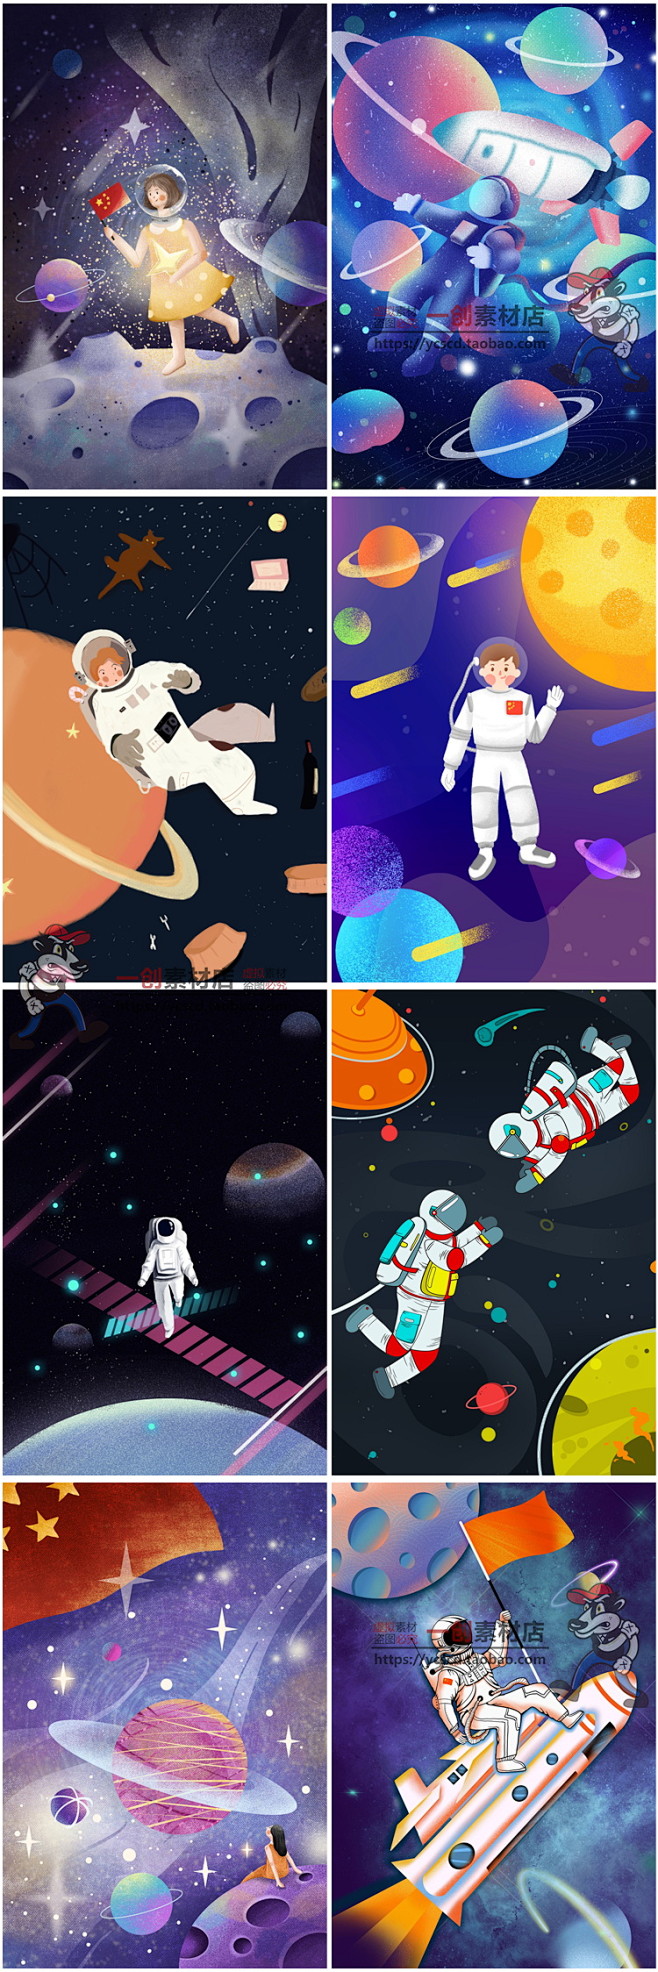 日本太空宇宙题材动漫图片